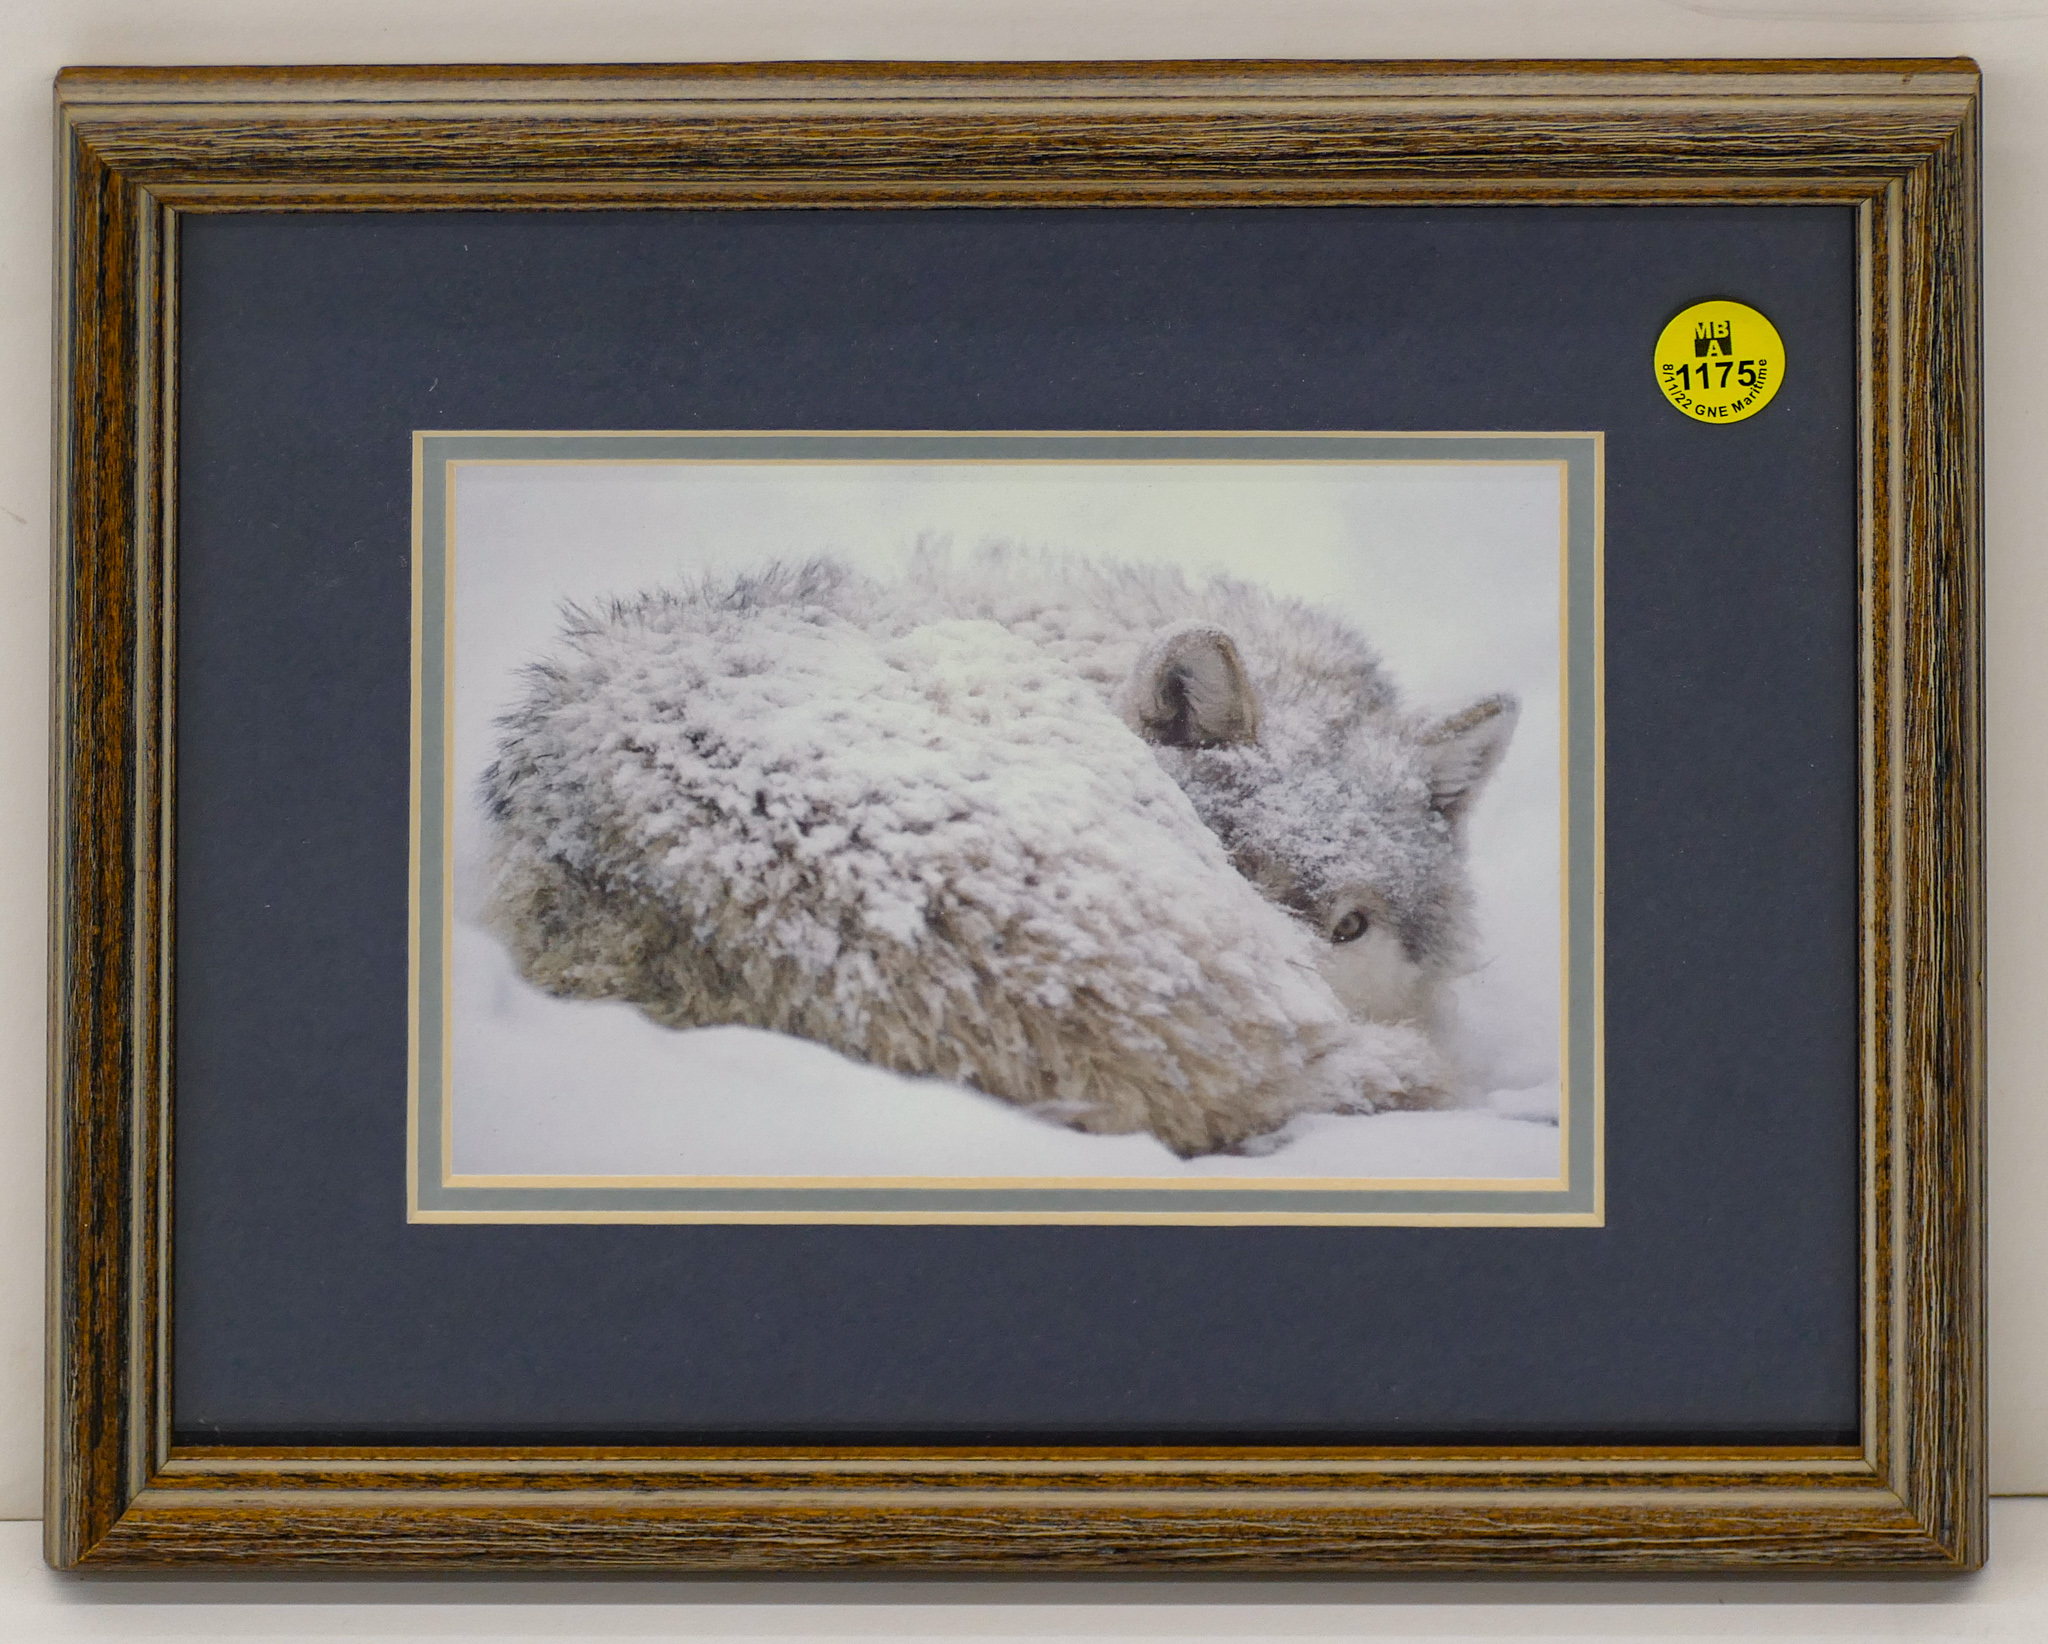 Winter Wolf Photograph Framed 9''x11''